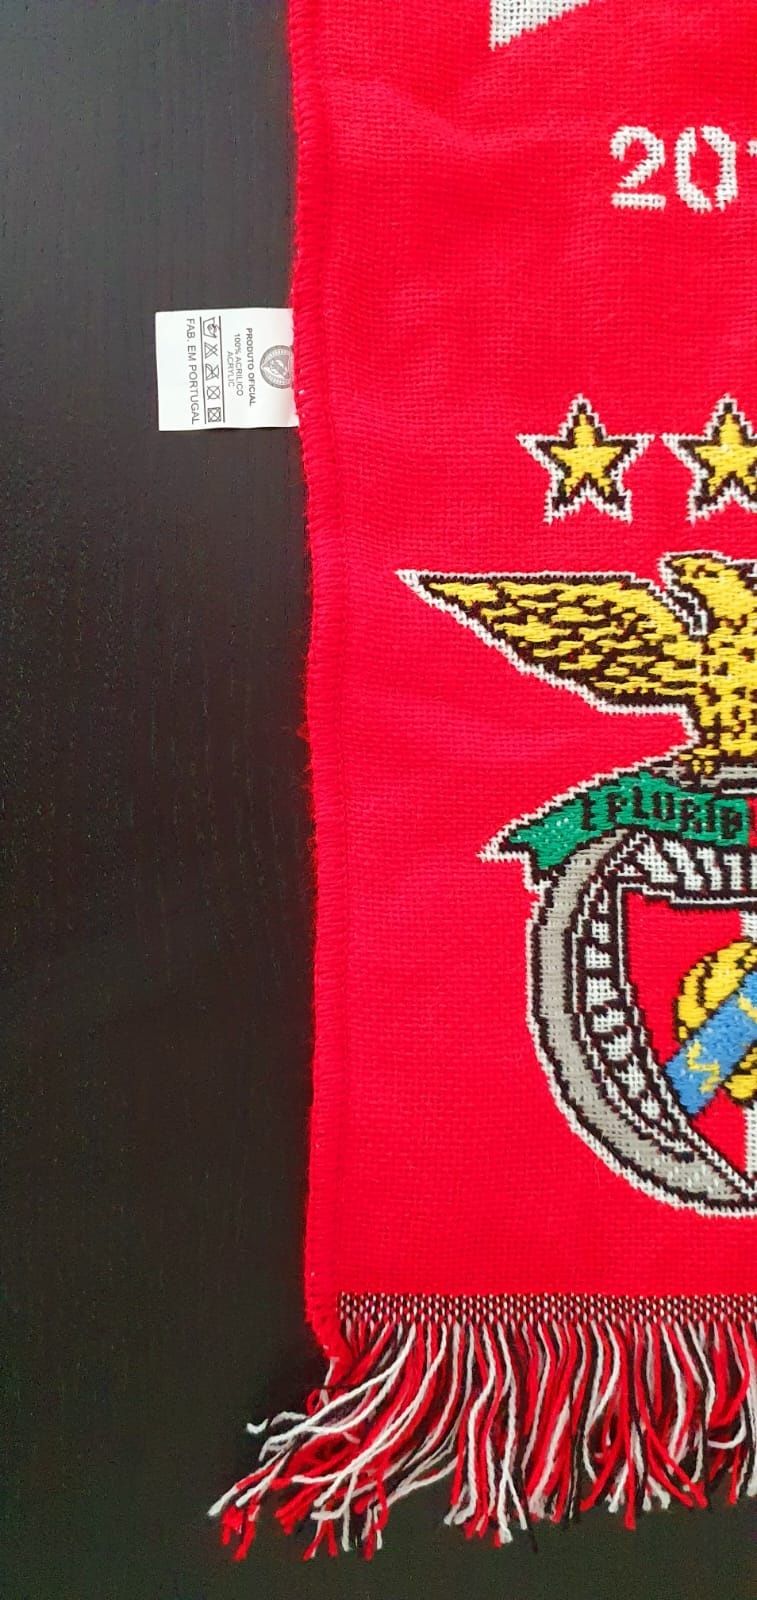 Cachecol do SL Benfica Tetracampeão